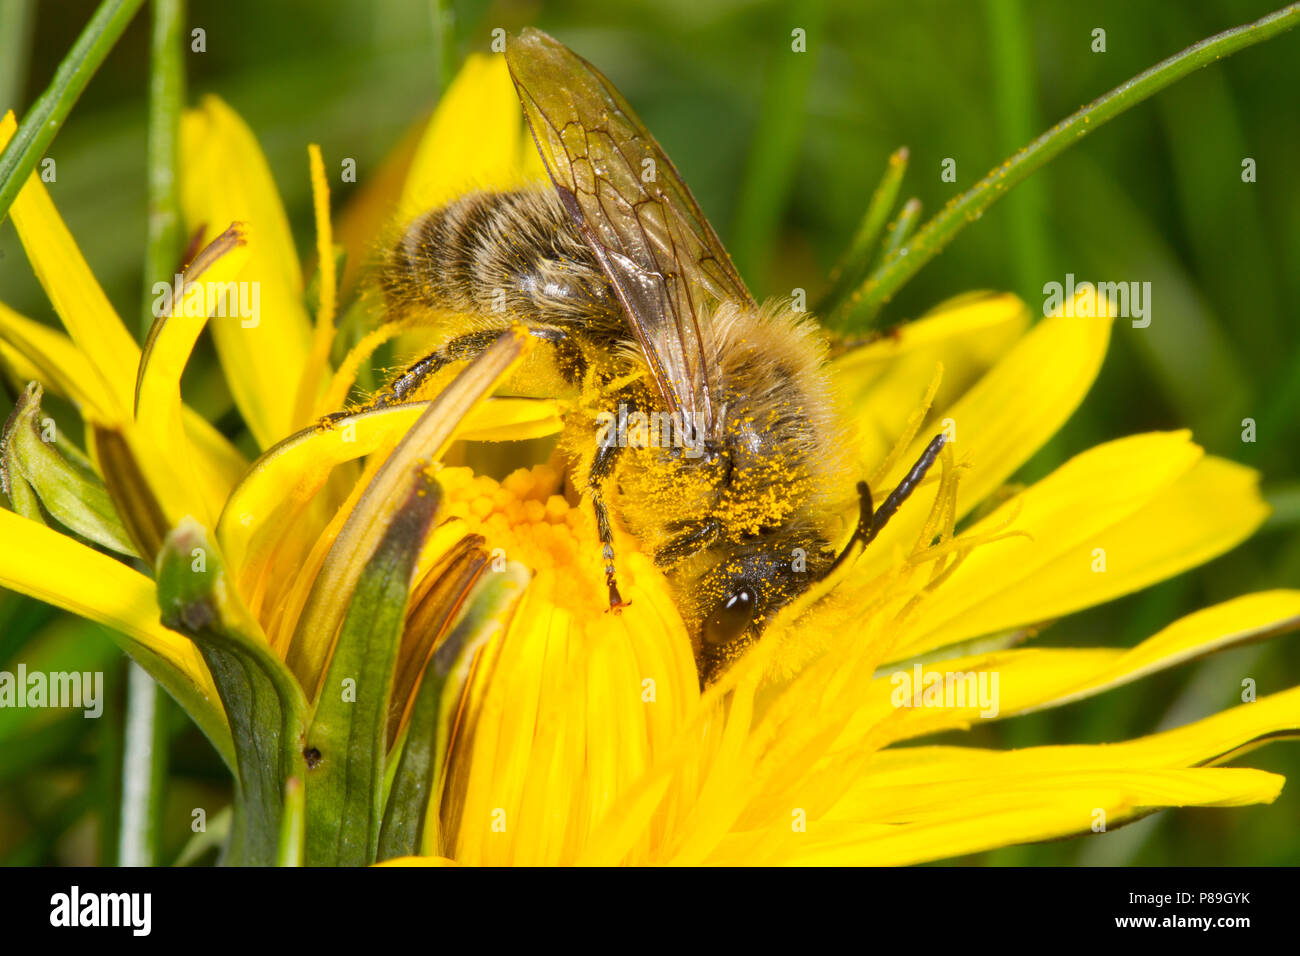 Colletes cunicularius printemps ( Colletes) mâles adultes d'abeilles. Gwynedd, Pays de Galles. Avril. Banque D'Images